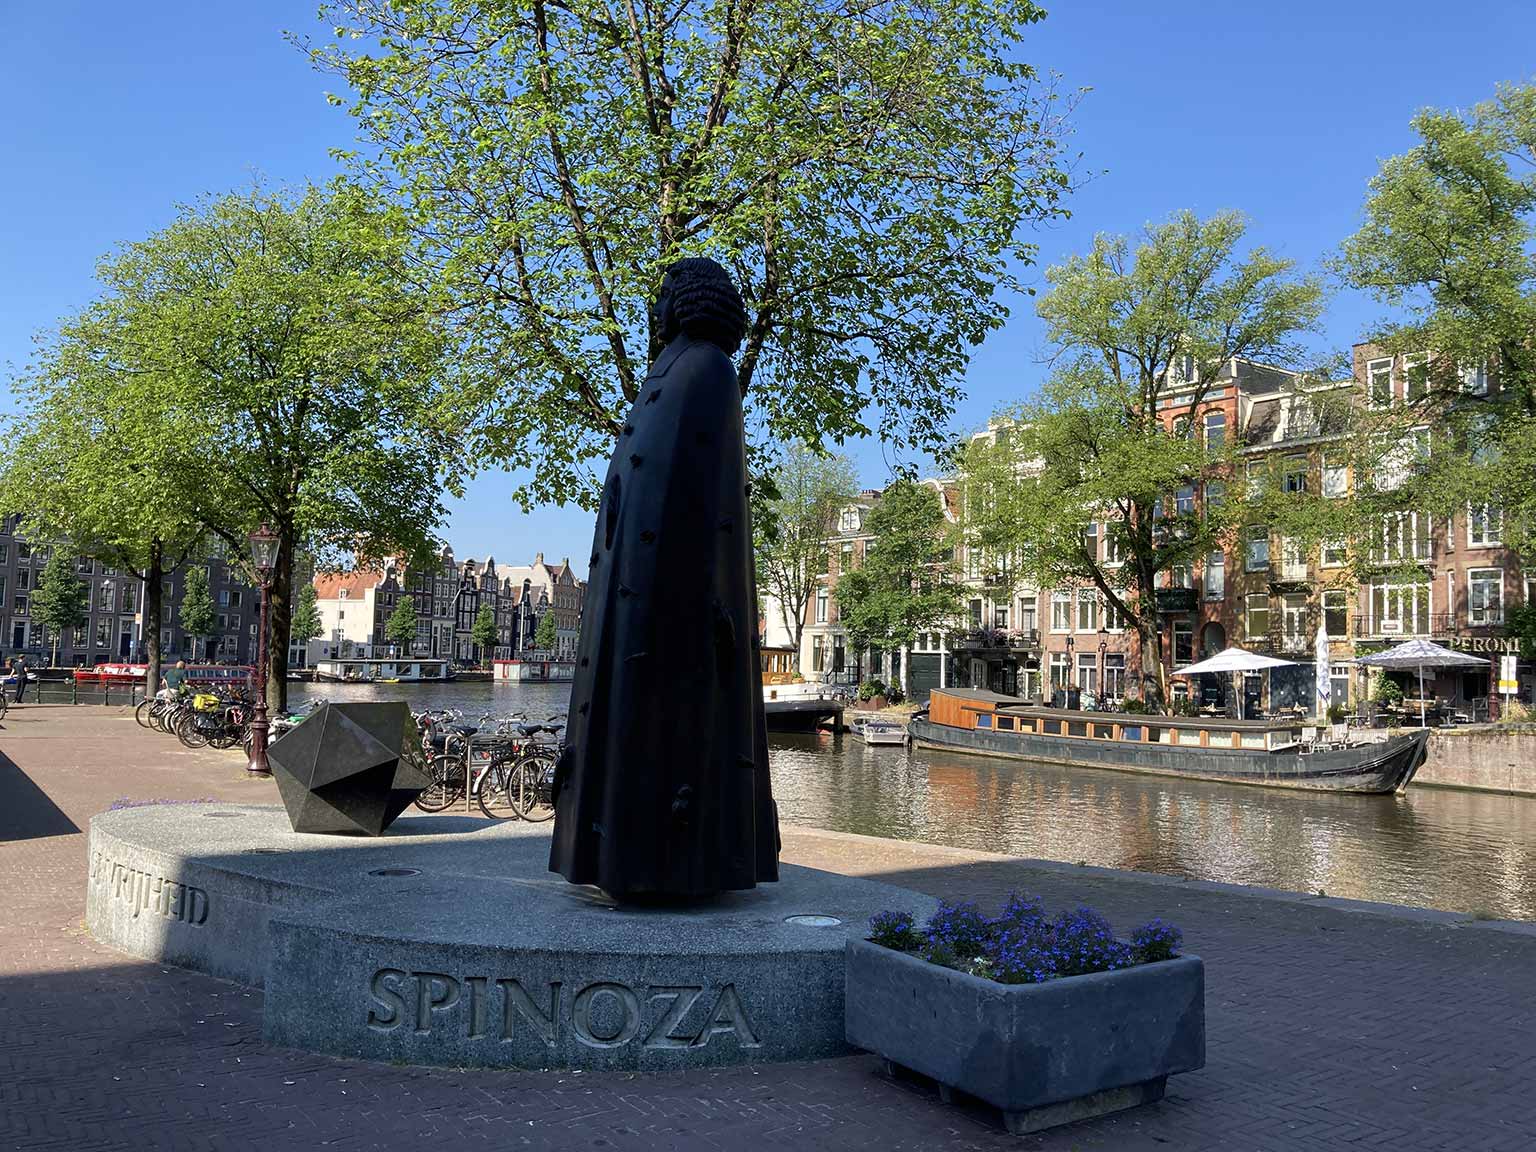 Beeld van Spinoza op de Zwanenburgwal, Amsterdam, met icosaëder